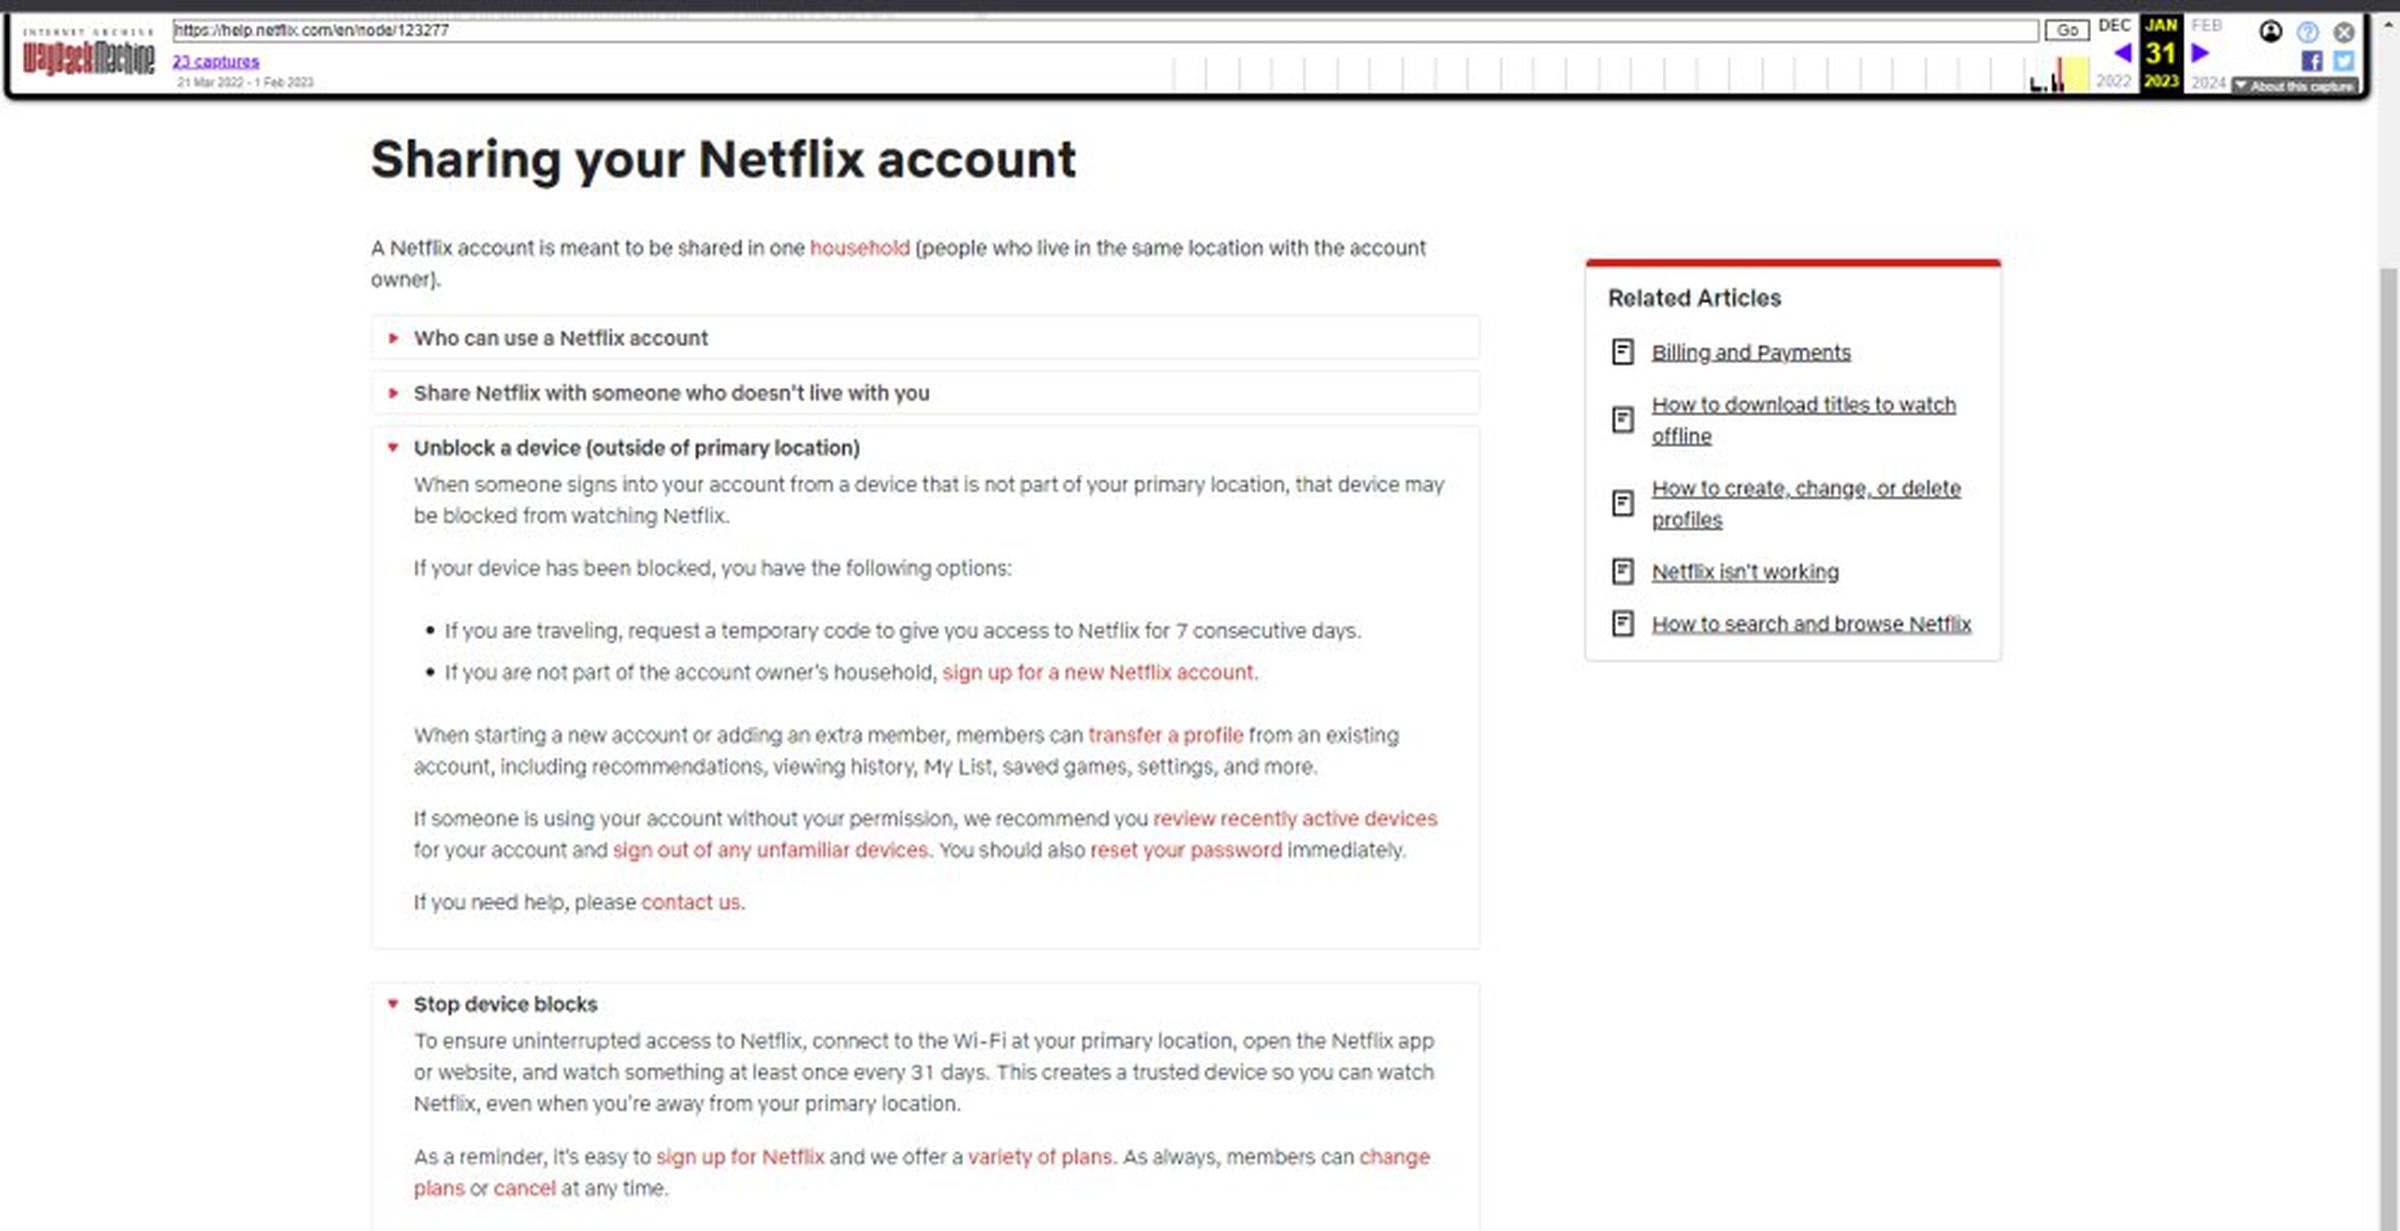 Архивираната страница за поддръжка казва, че Netflix може да блокира устройство, „което не е част от вашето основно местоположение“.